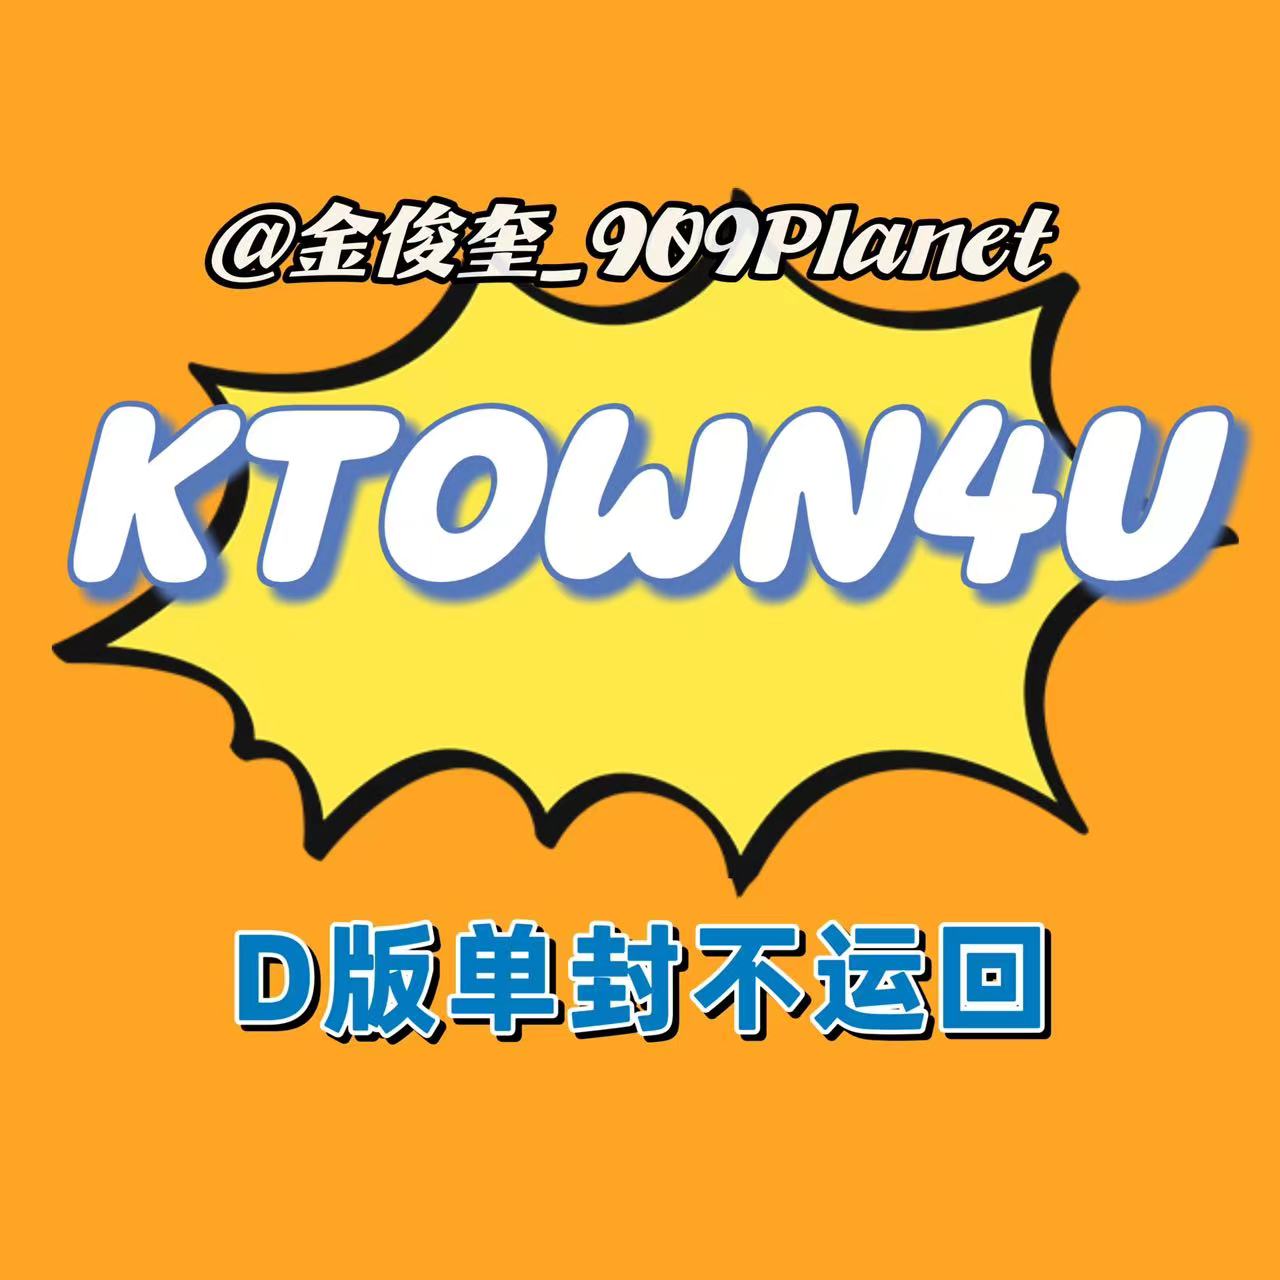 [拆卡专] [Ktown4u Special Gift] TREASURE - 2ND FULL ALBUM [REBOOT] DIGIPACK VER._金俊奎909Planet